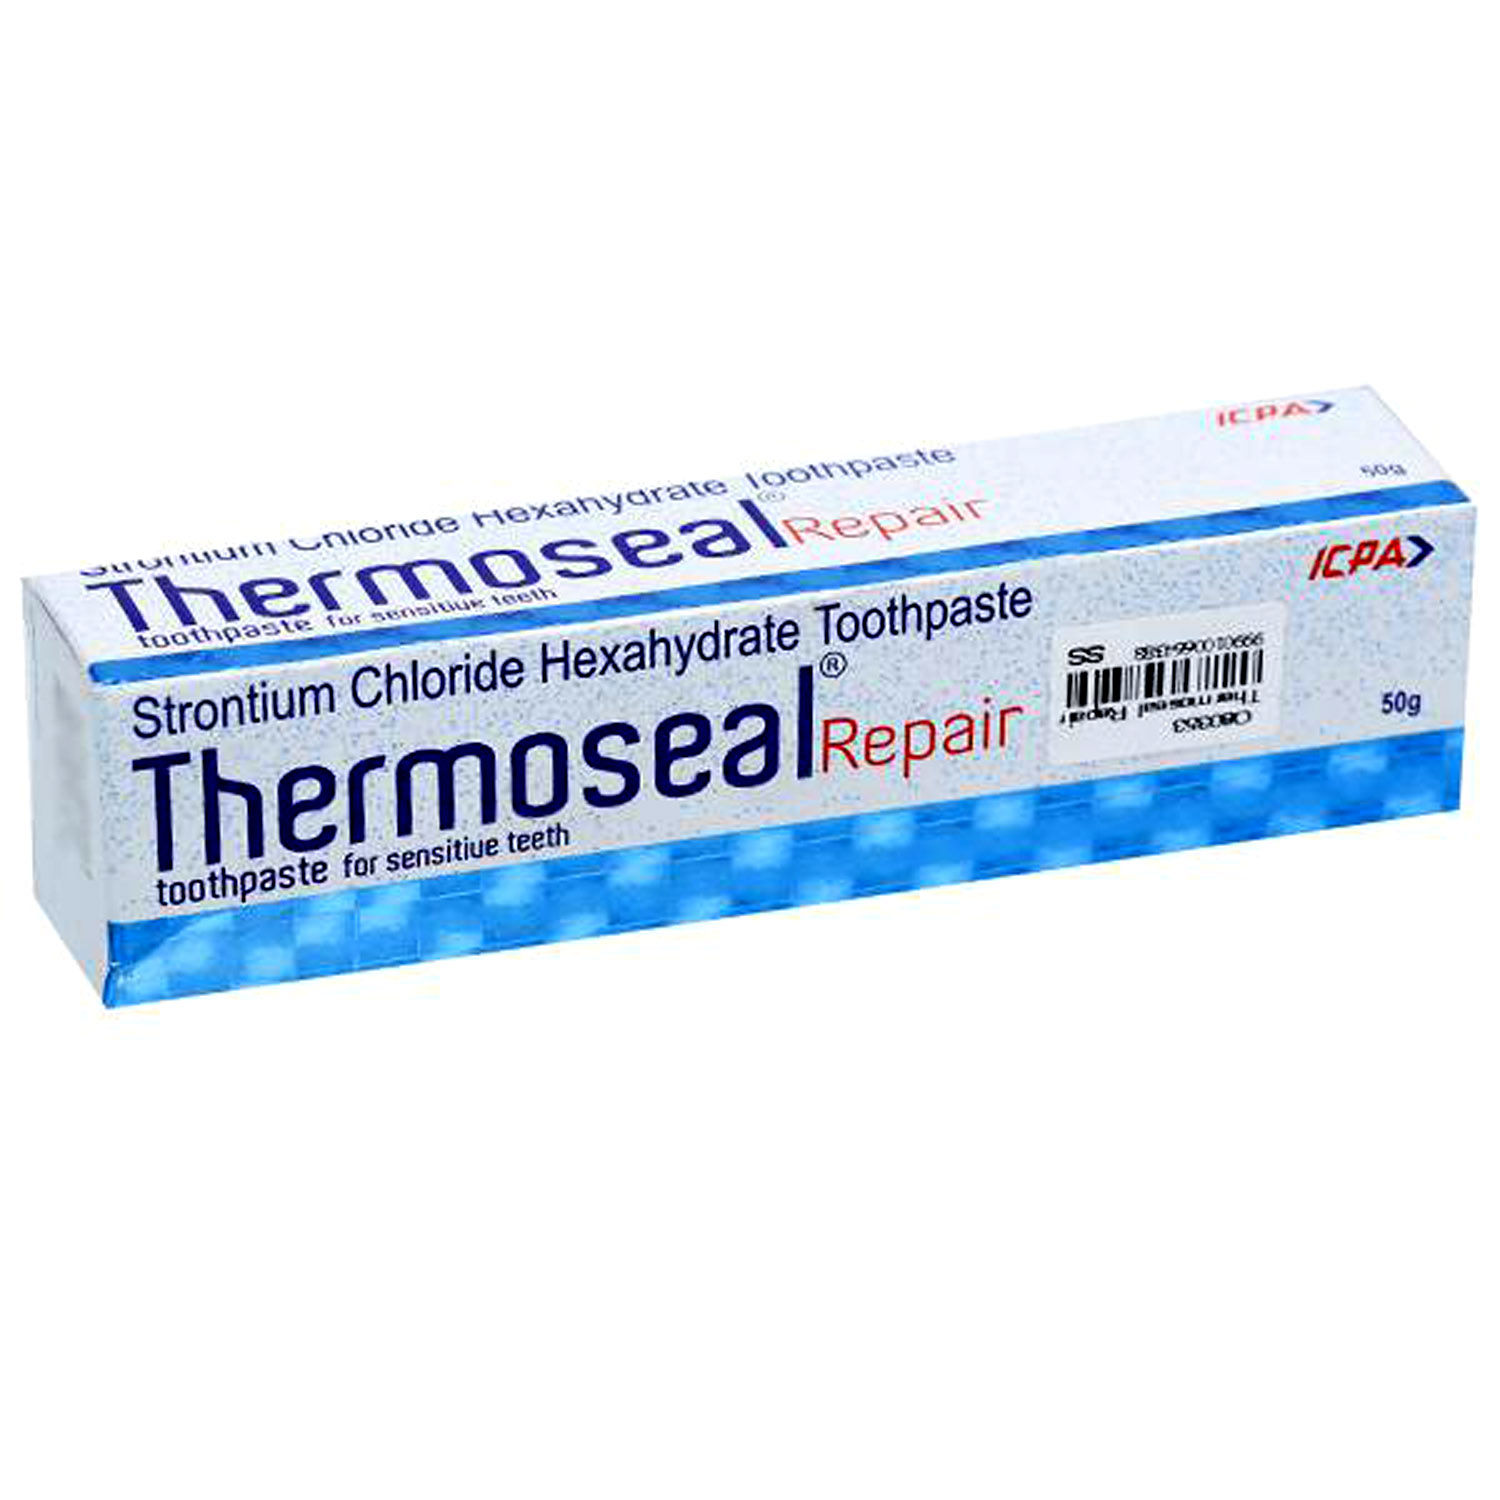 Buy Thermoseal Repair Sensitive Teeth Toothpaste, 50 gm Online